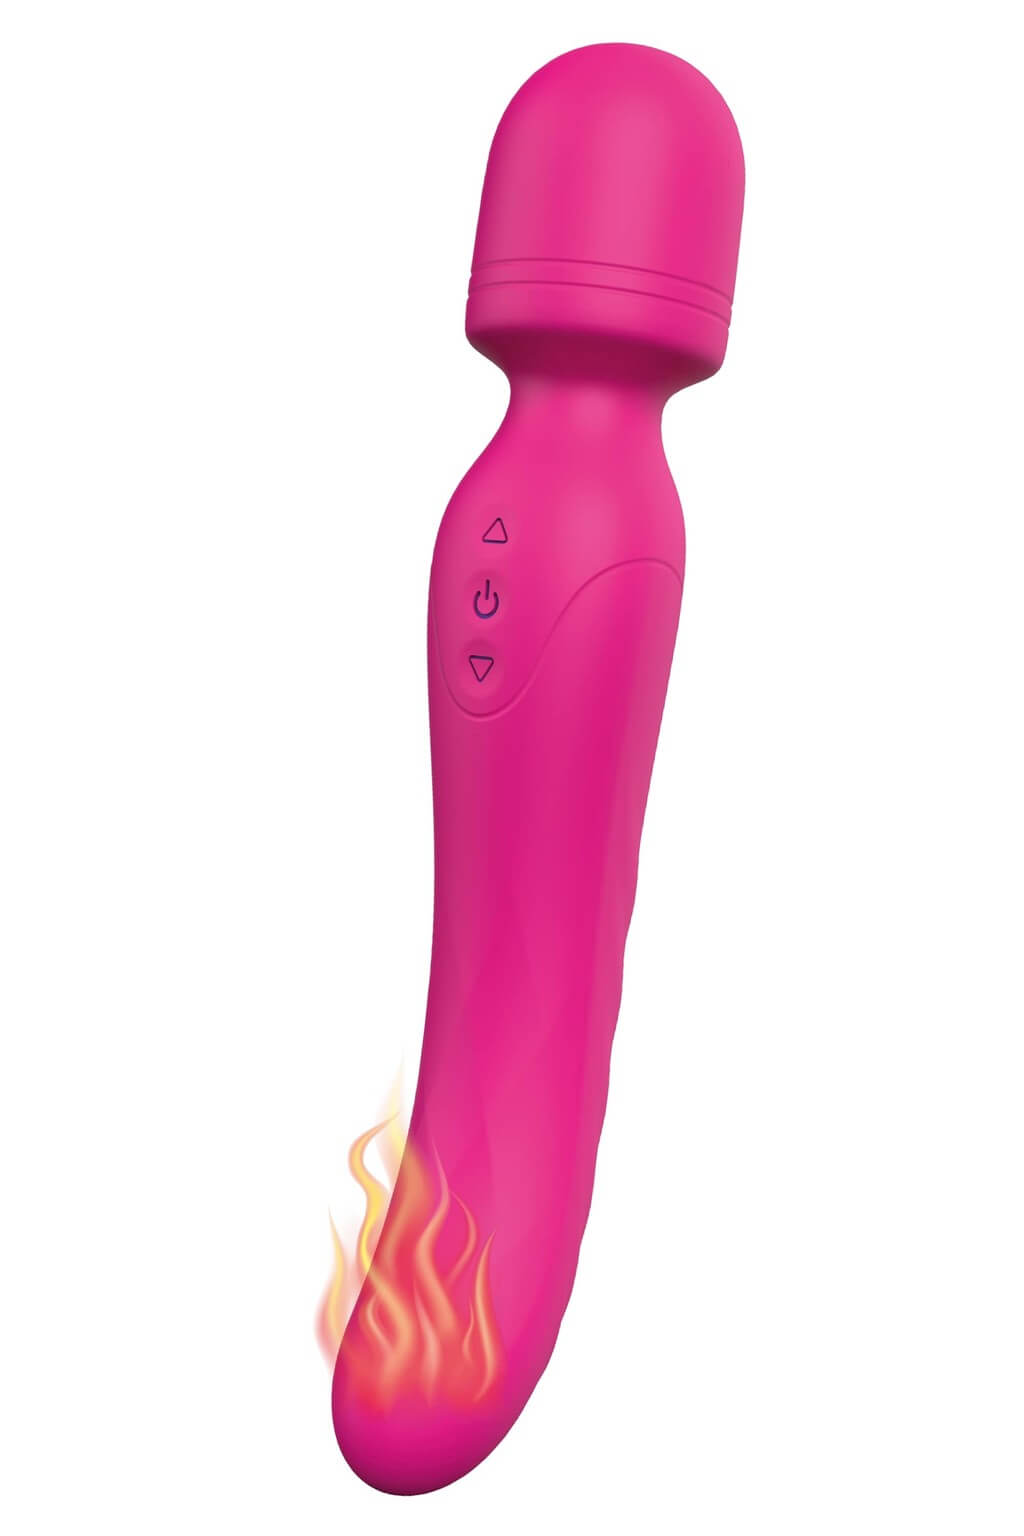 Vibes of Love Wand - akkus, melegítő, masszírozó vibrátor (pink) Vibrátorok (rezgő vibrátor) kép